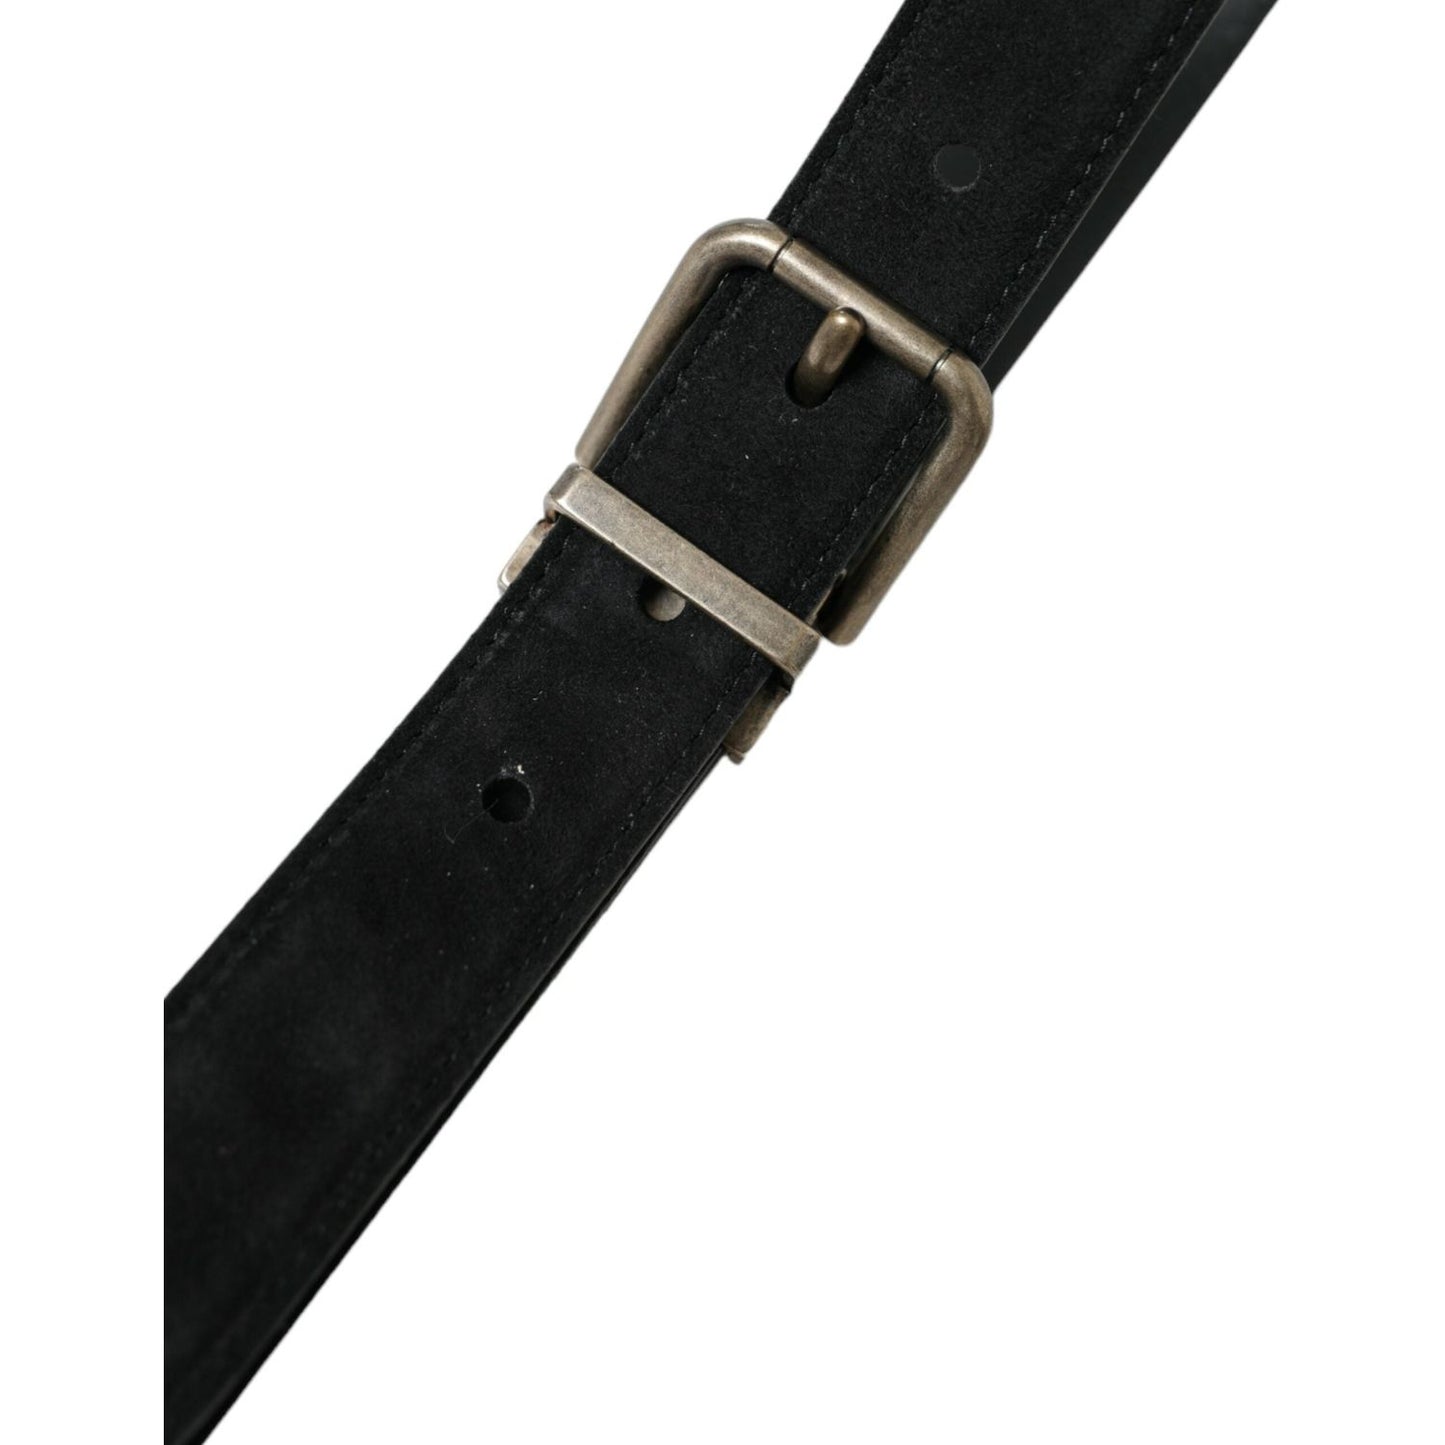 Dolce & Gabbana | Elegant Black Leather Belt with Metal Buckle| McRichard Designer Brands   